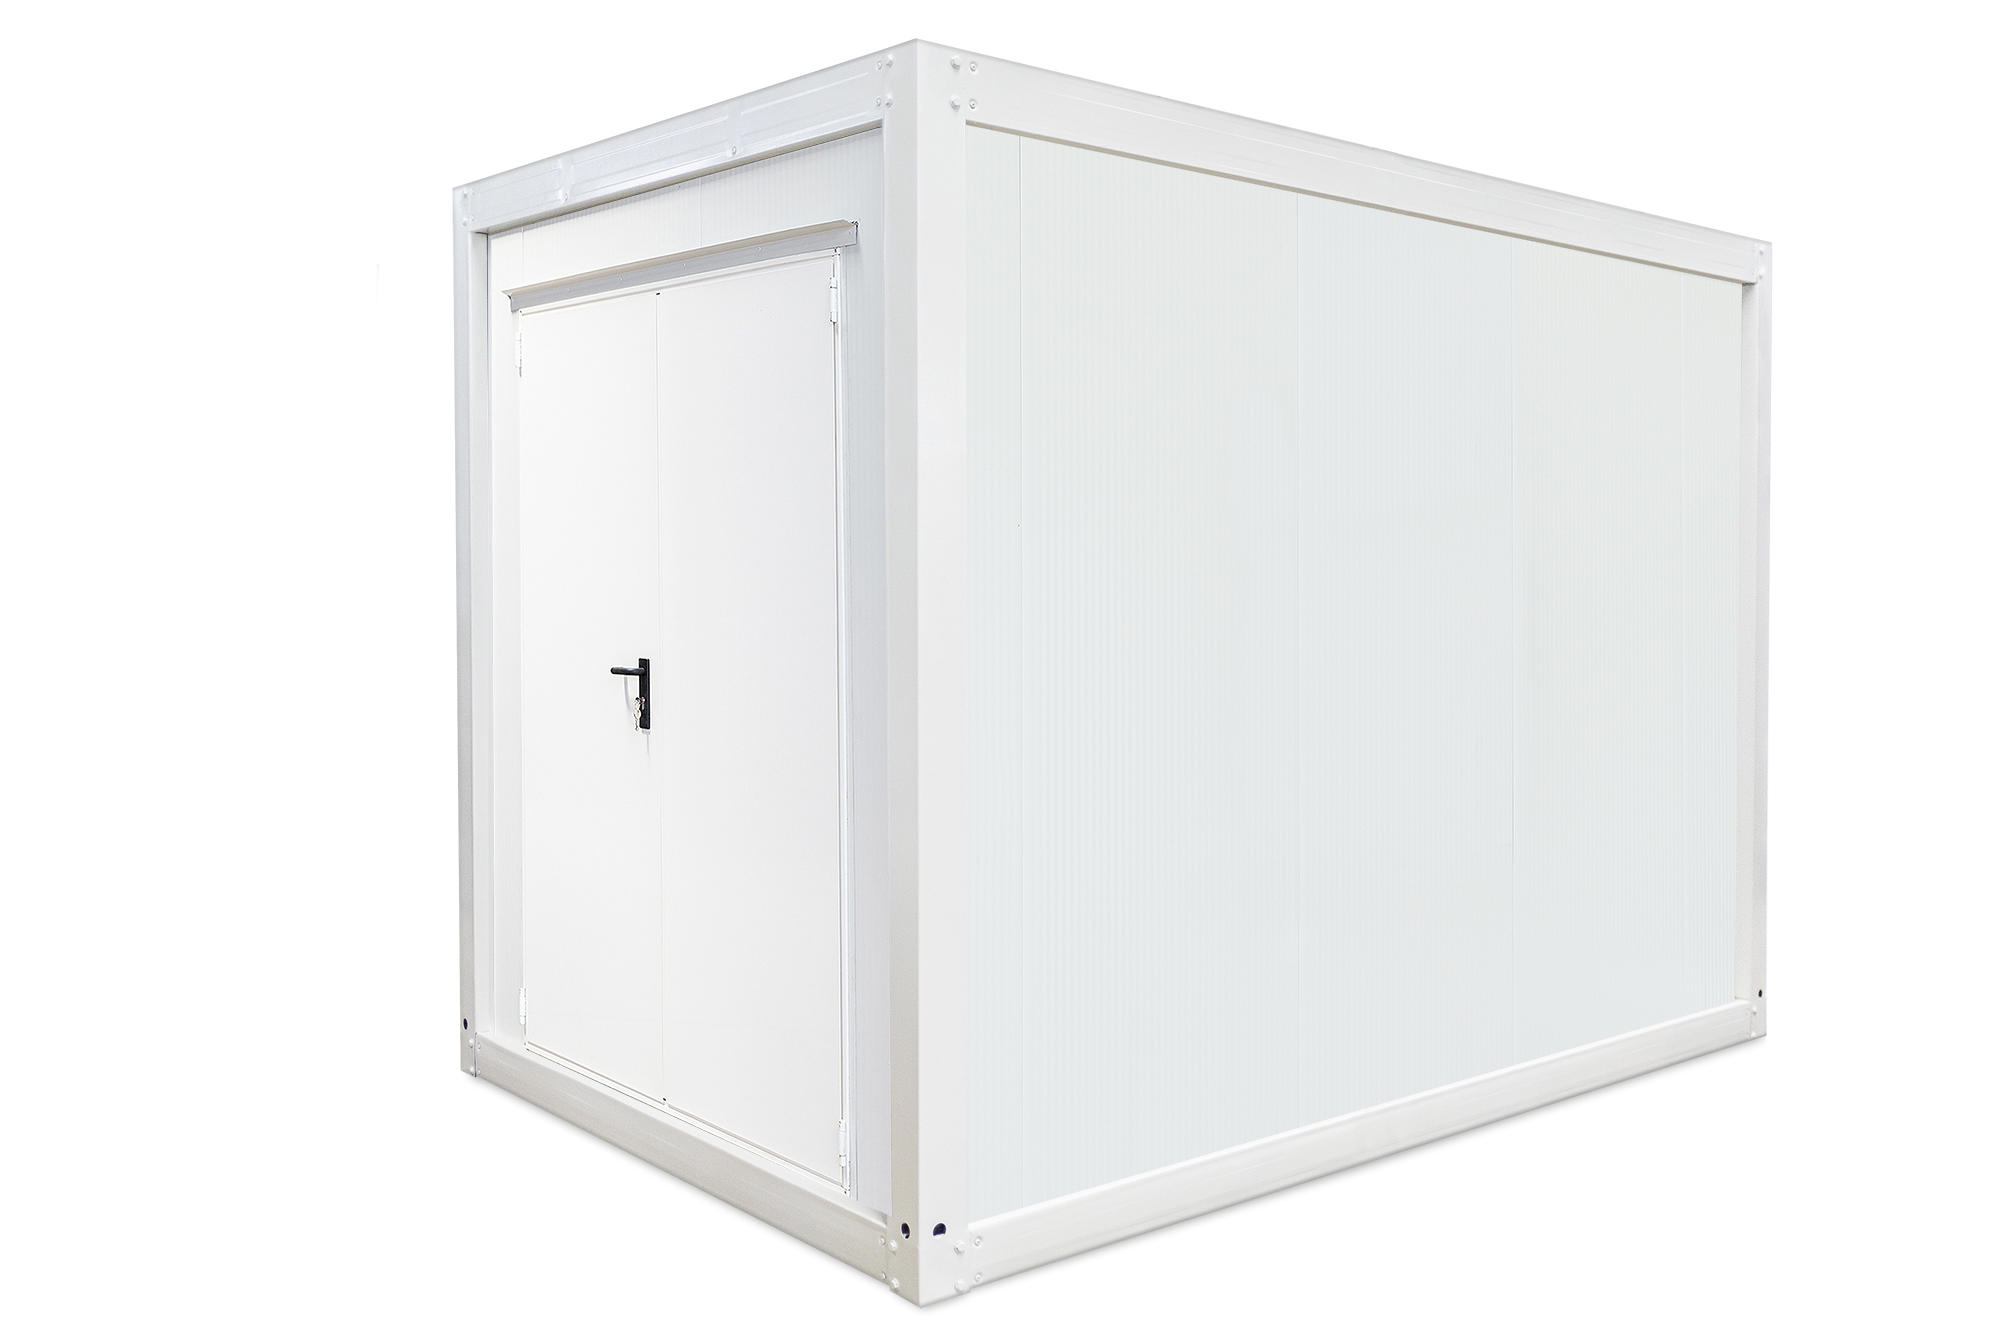 4m HI-FLEX Storage container